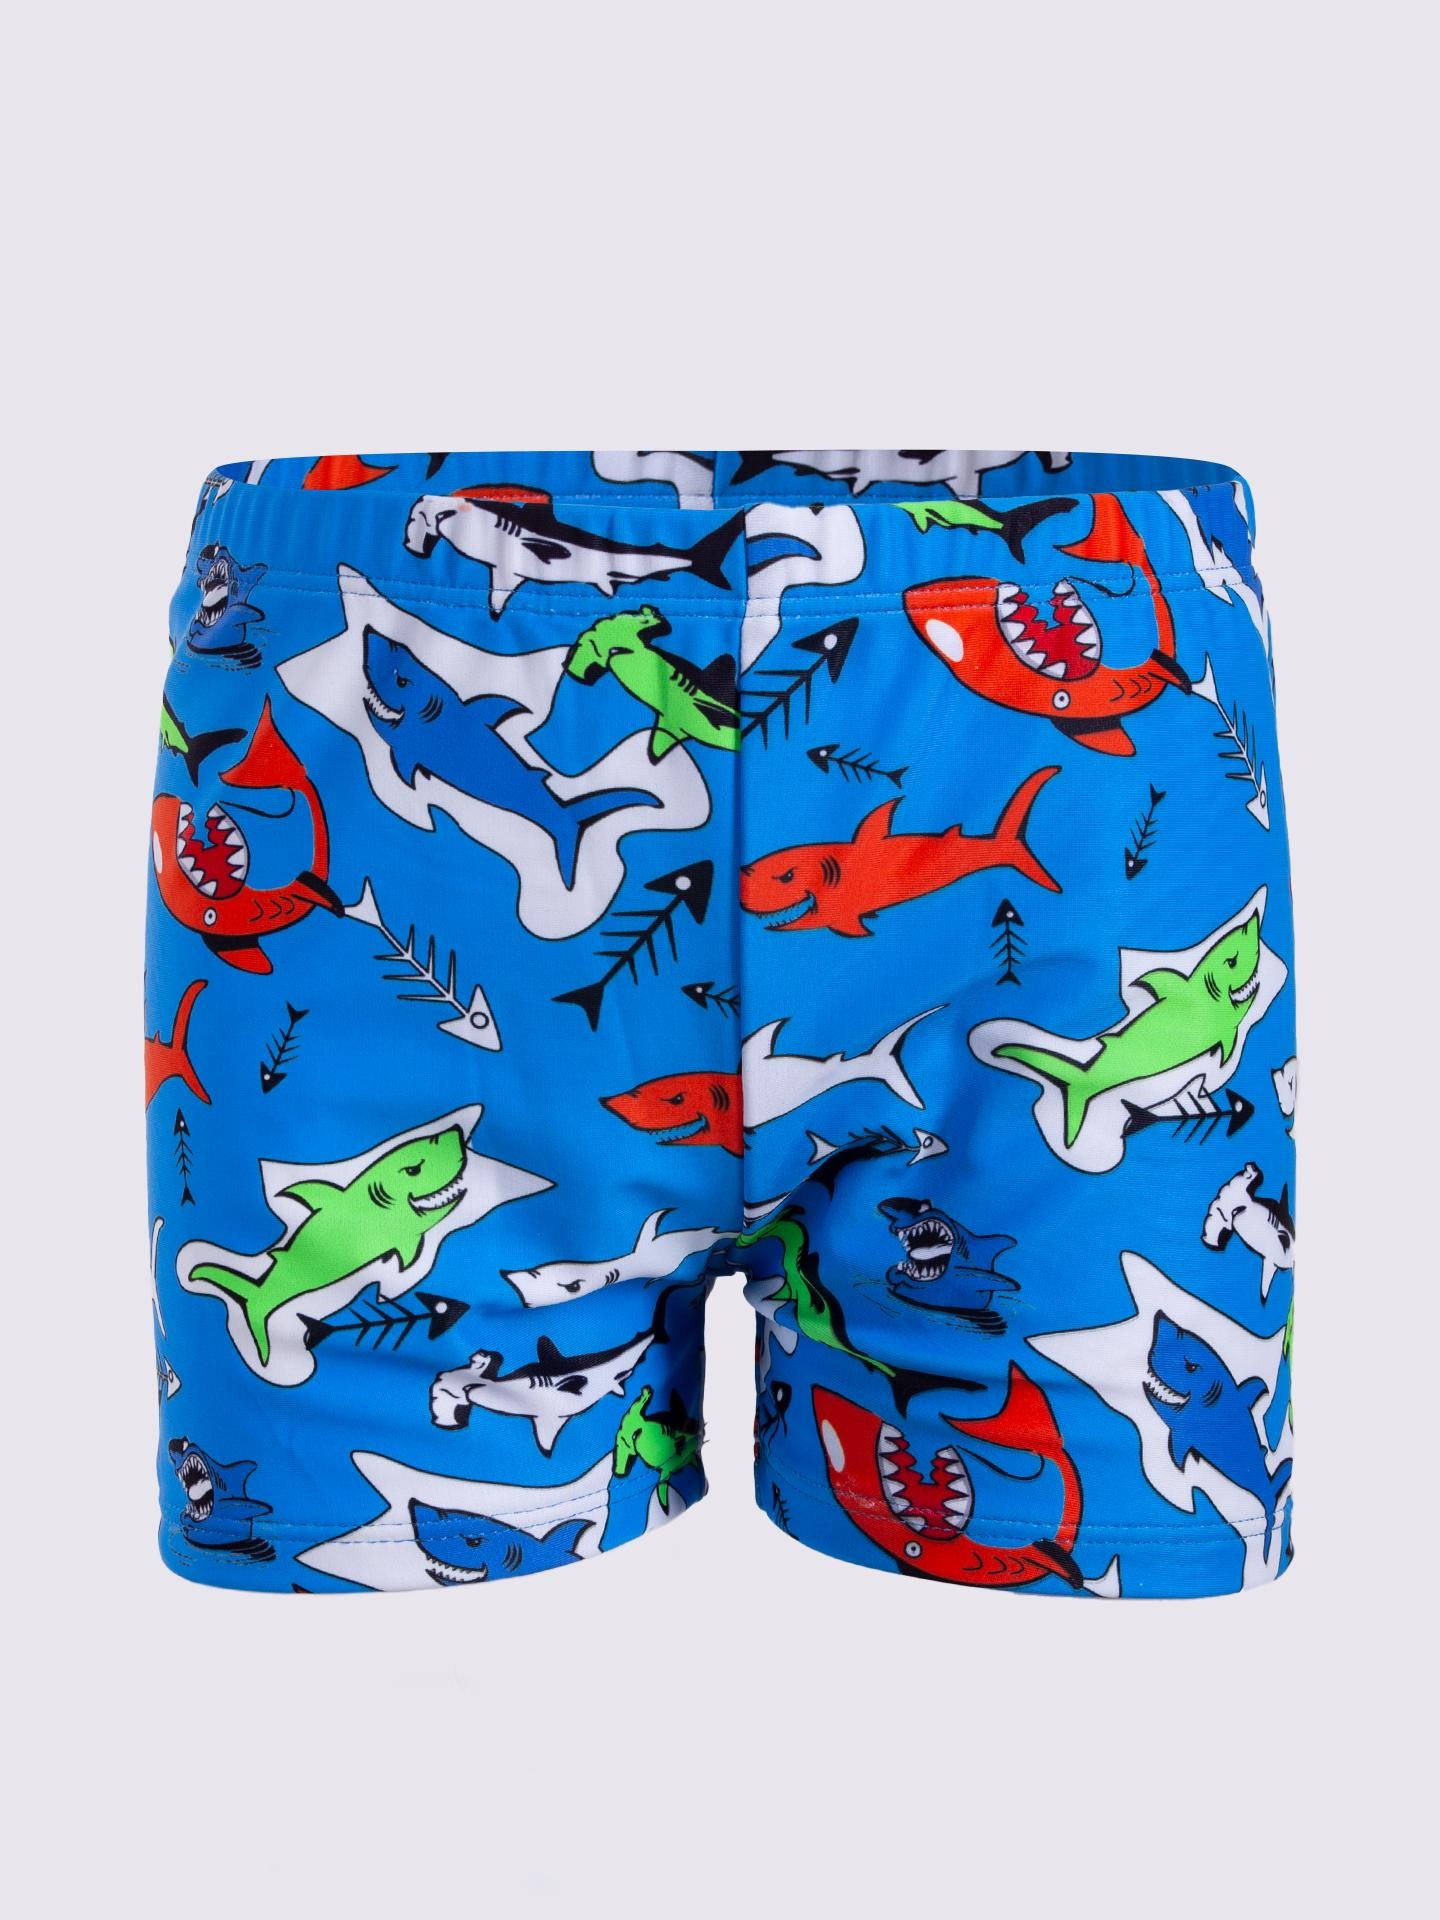 Chlapecké plavecké šortky Yoclub LKS-0060C-A100 Multicolour 128-134